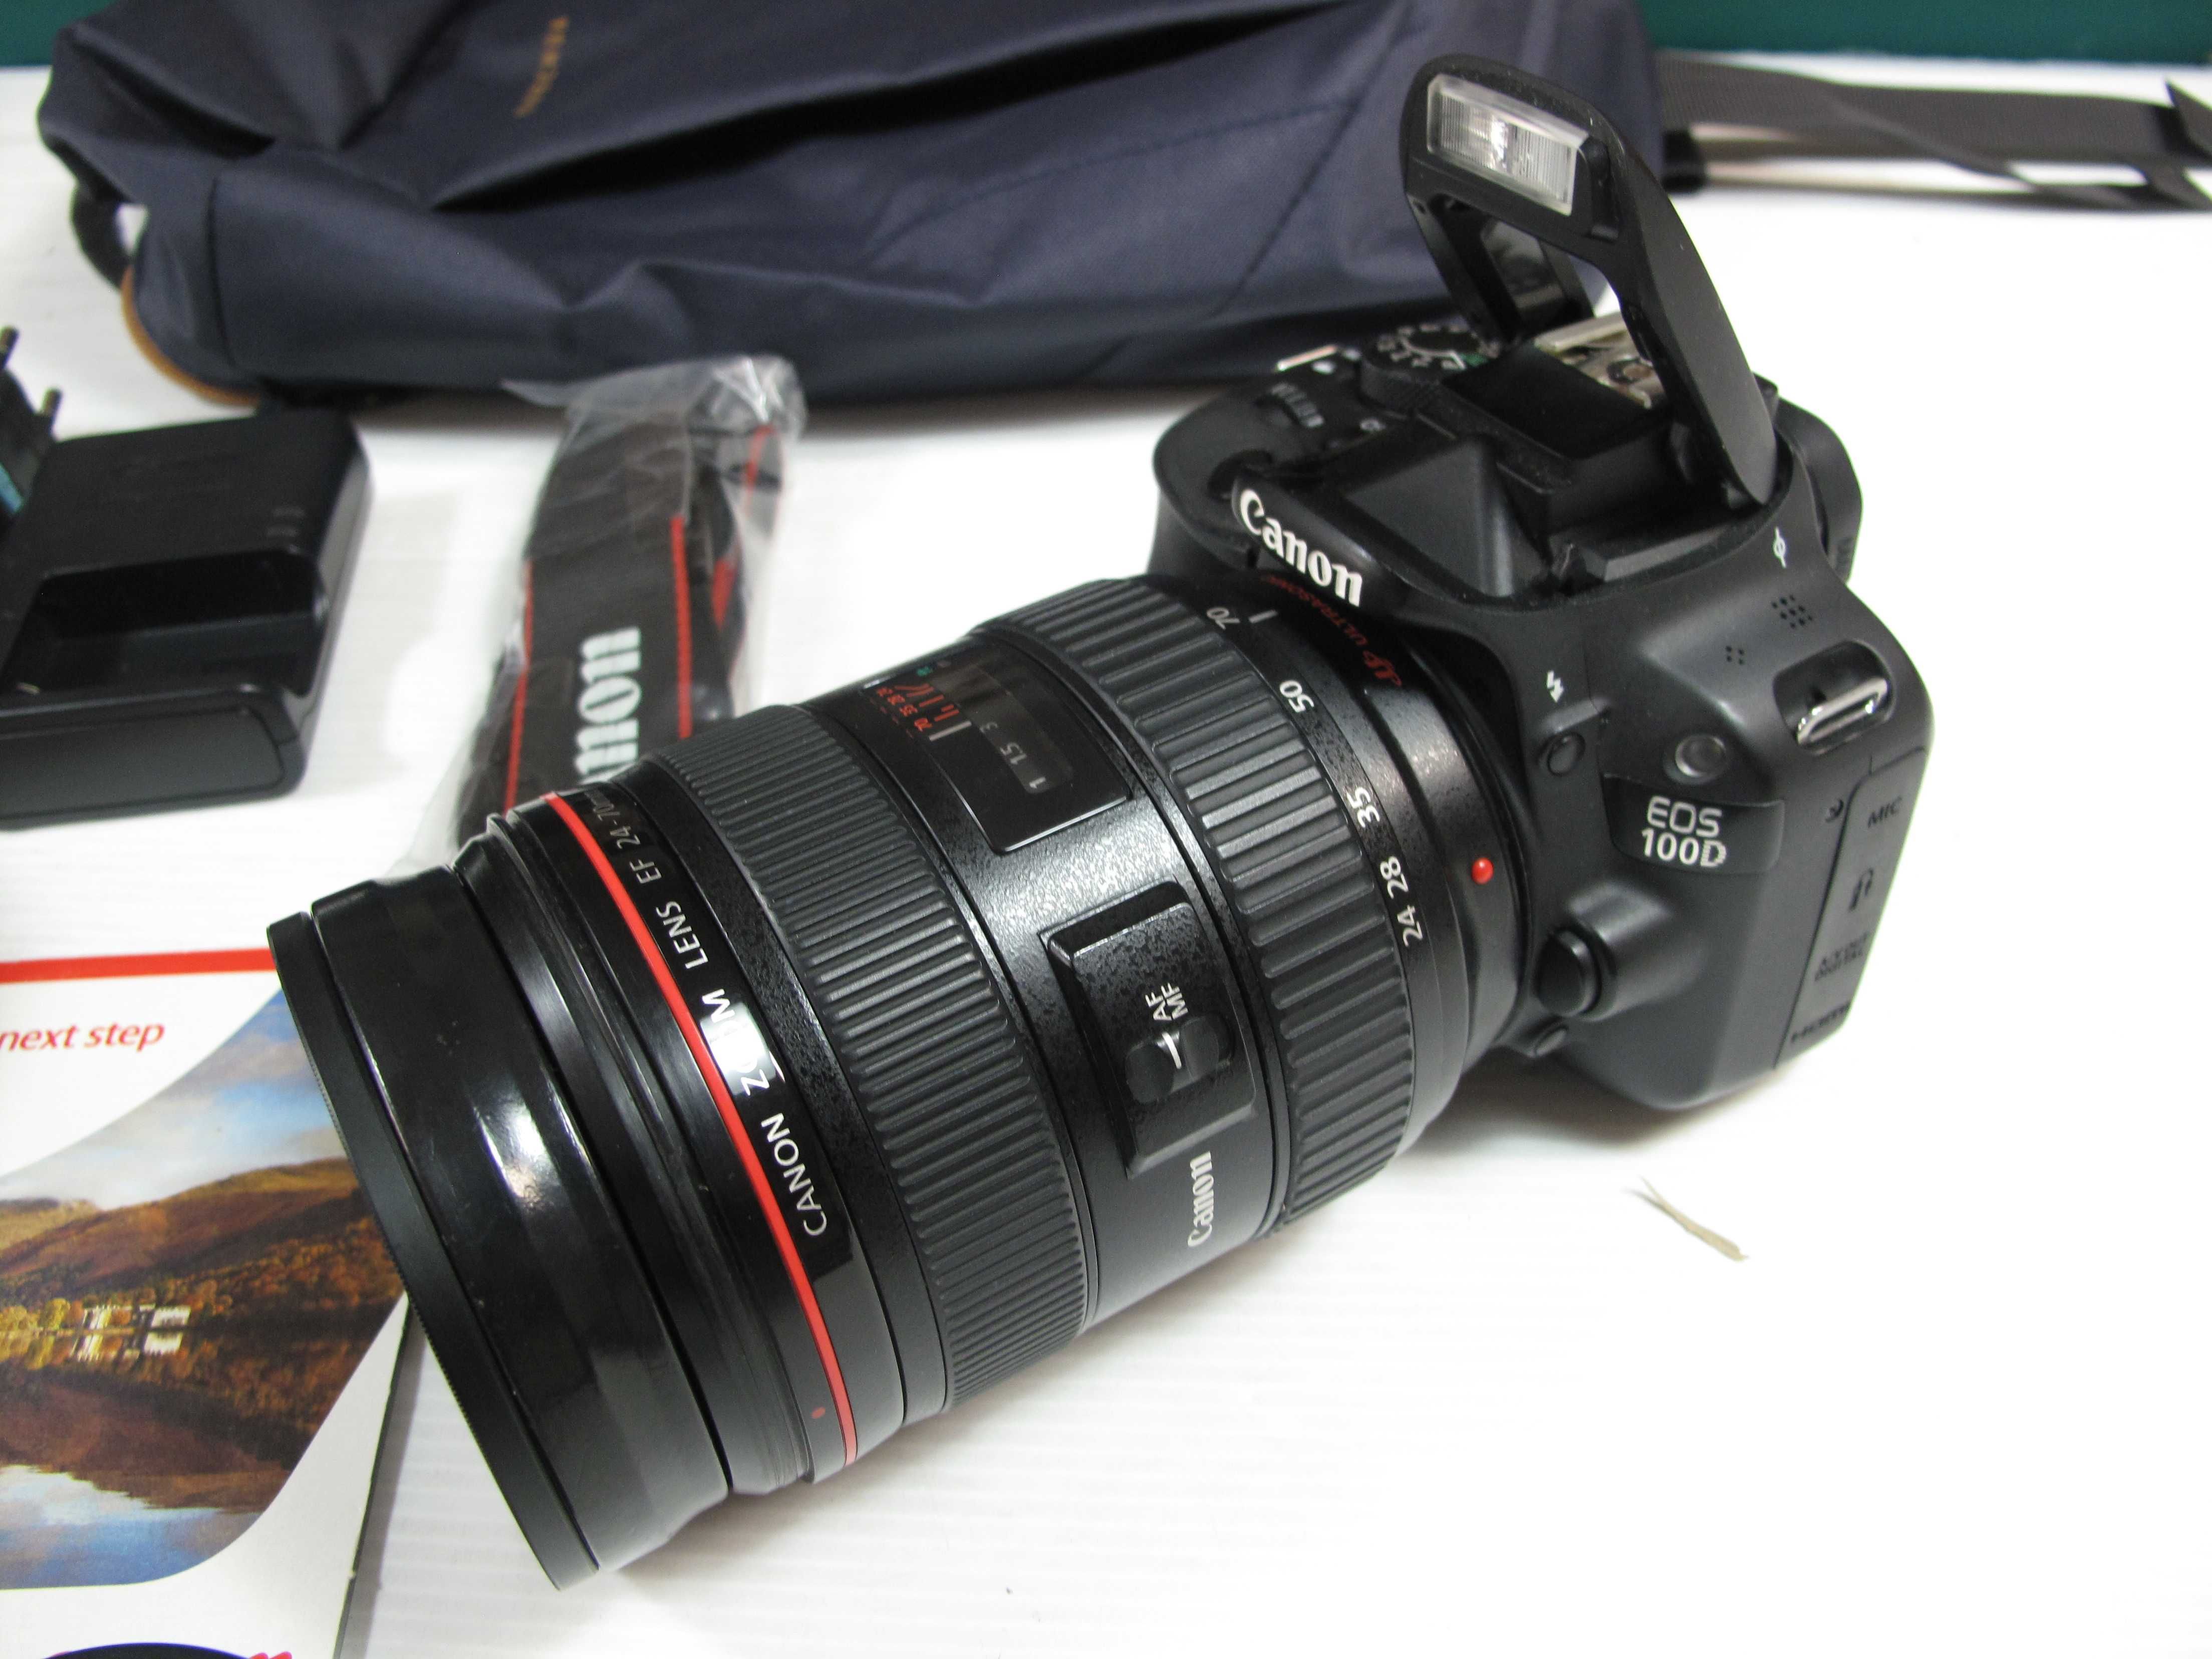 Canon 100D Ecrã Tátil  com ou sem lente - Importante ver descrição